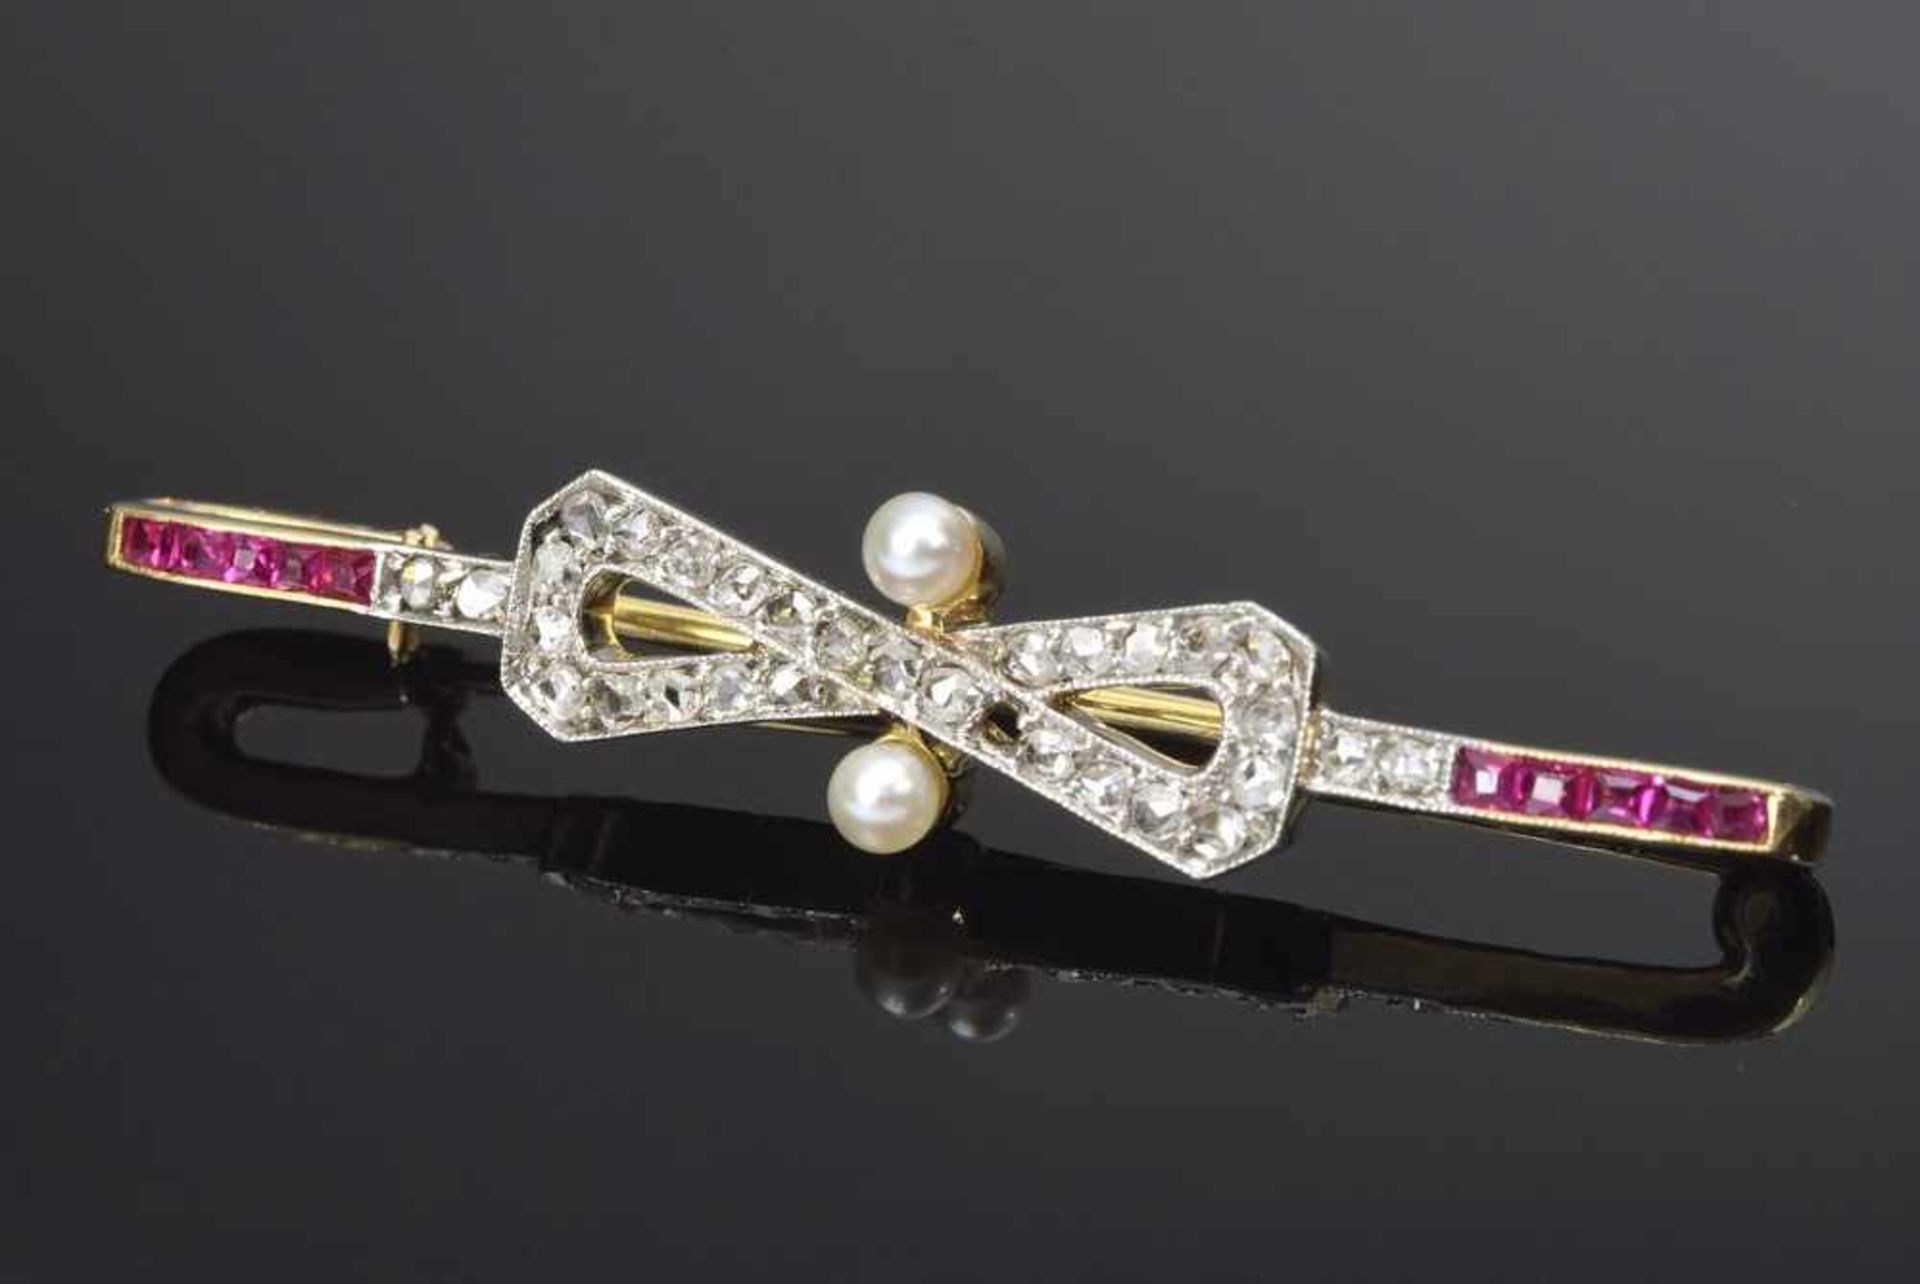 GG 750 Nadel "Schleife" mit Diamantrosen und Rubinen sowie 2 Perlen, um 1900, 3,9g, L. 4,5cm, 1